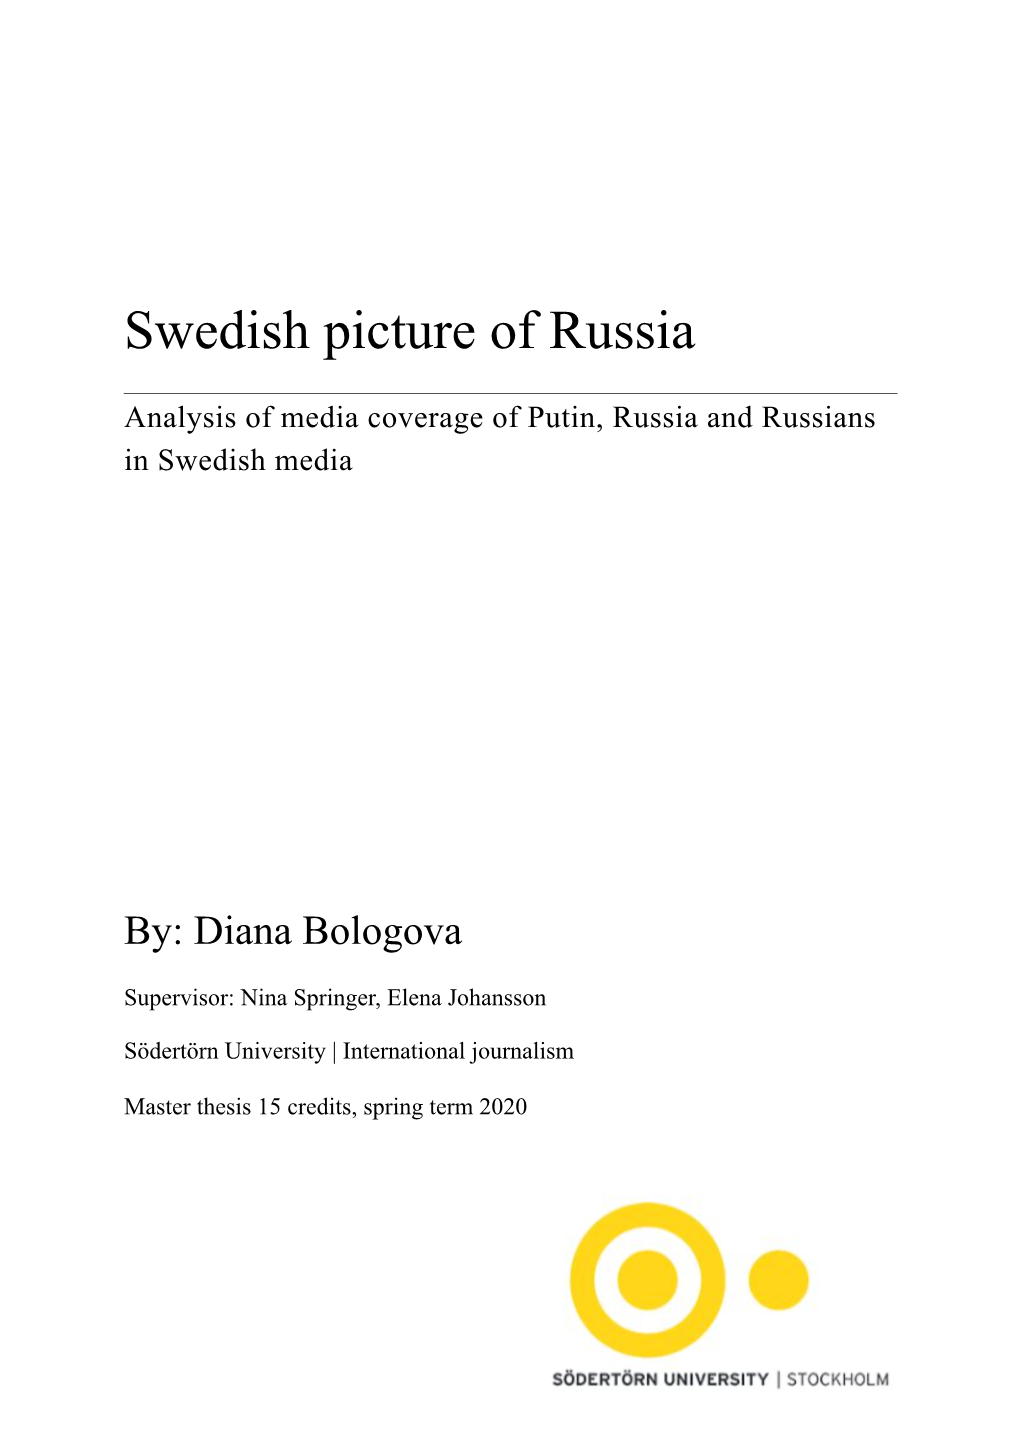 Diana Bologova Swedish Picture of Russia MA2020